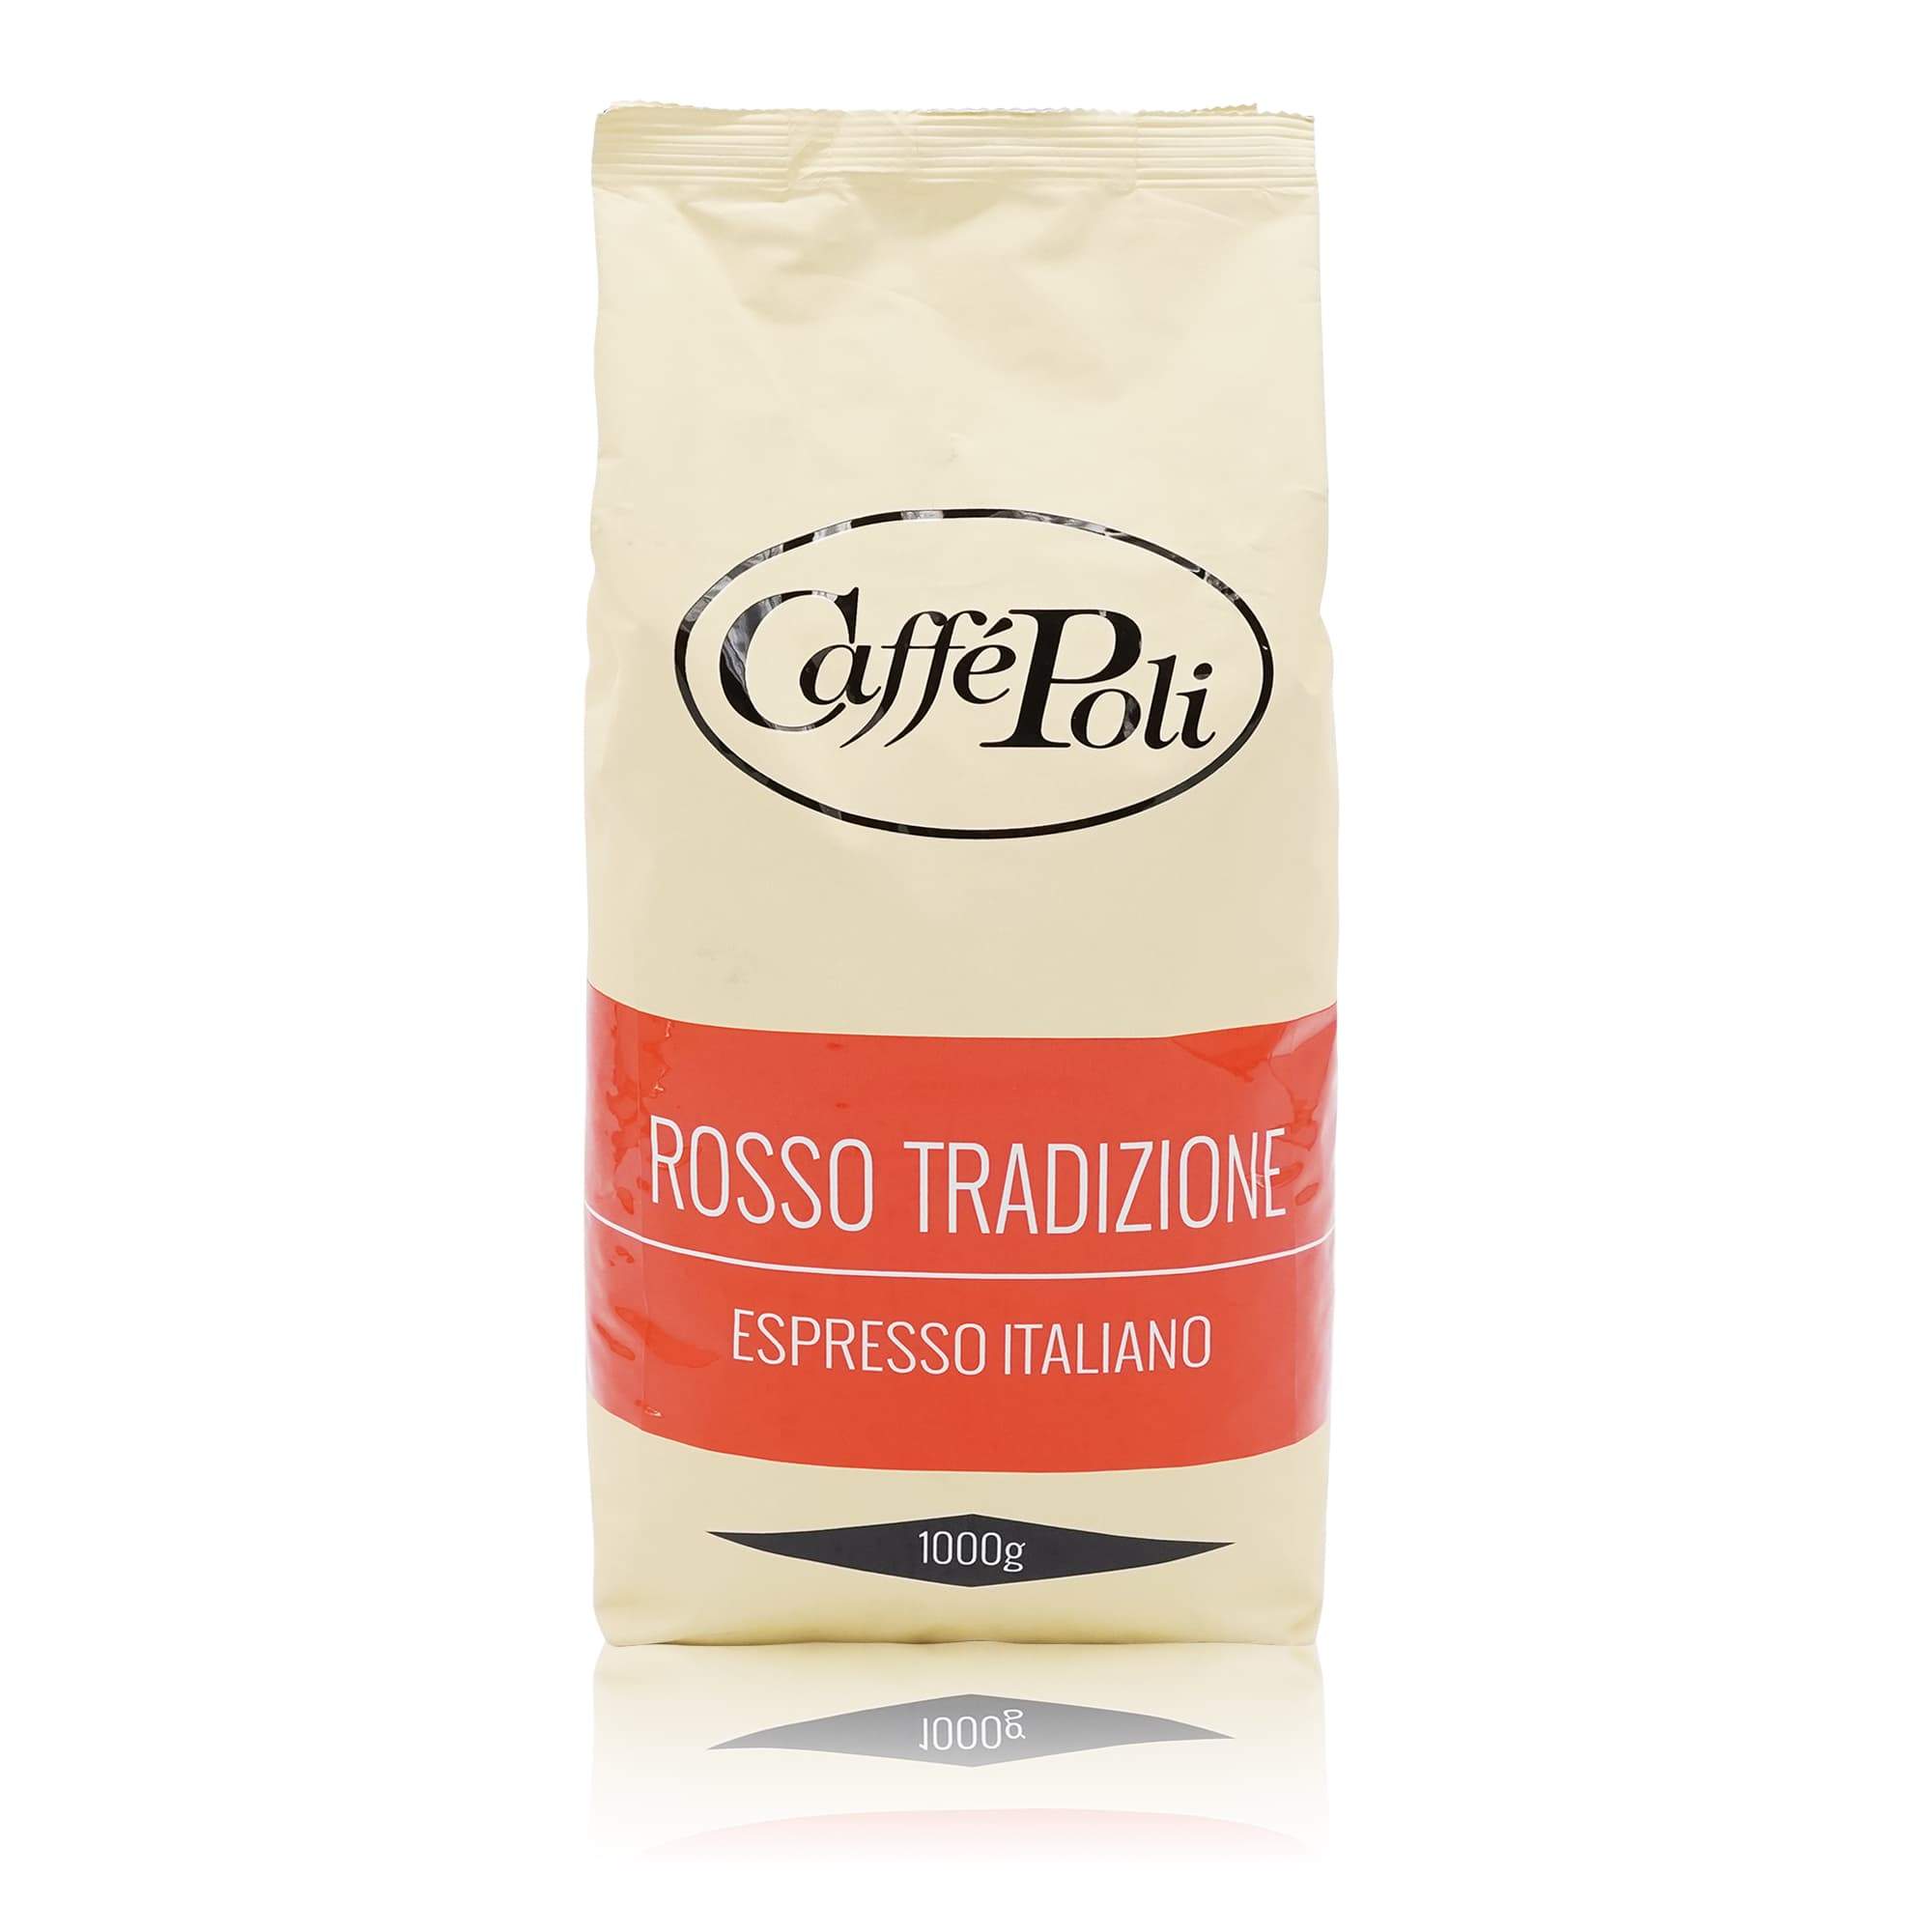 POLI Espressobhohnen Rosso Tradizione - 1kg - italienisch-einkaufen.de